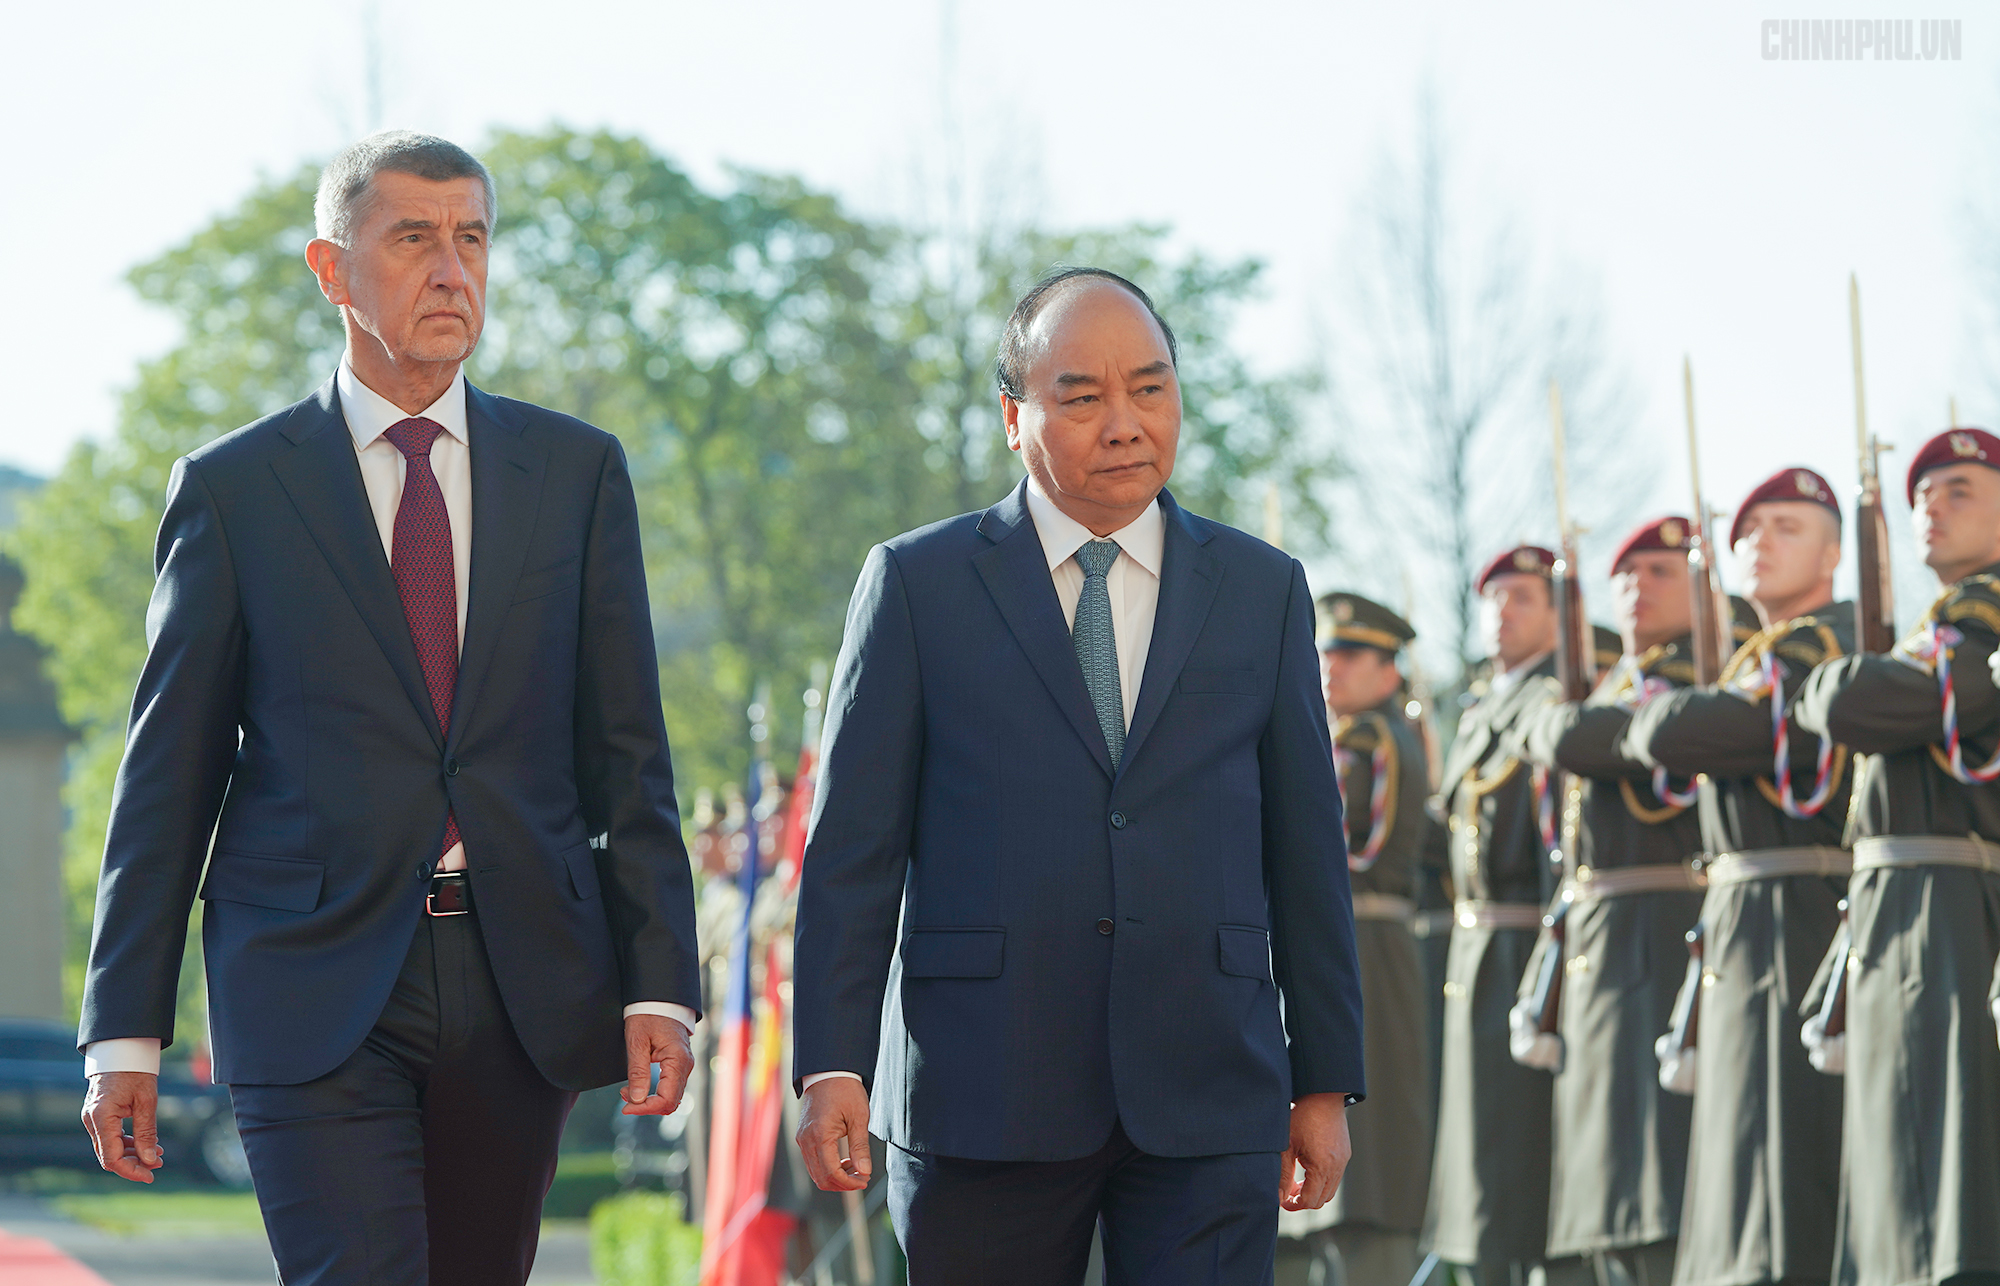 Thủ tướng Cộng hòa Czech chủ trì lễ đón chính thức Thủ tướng Nguyễn Xuân Phúc